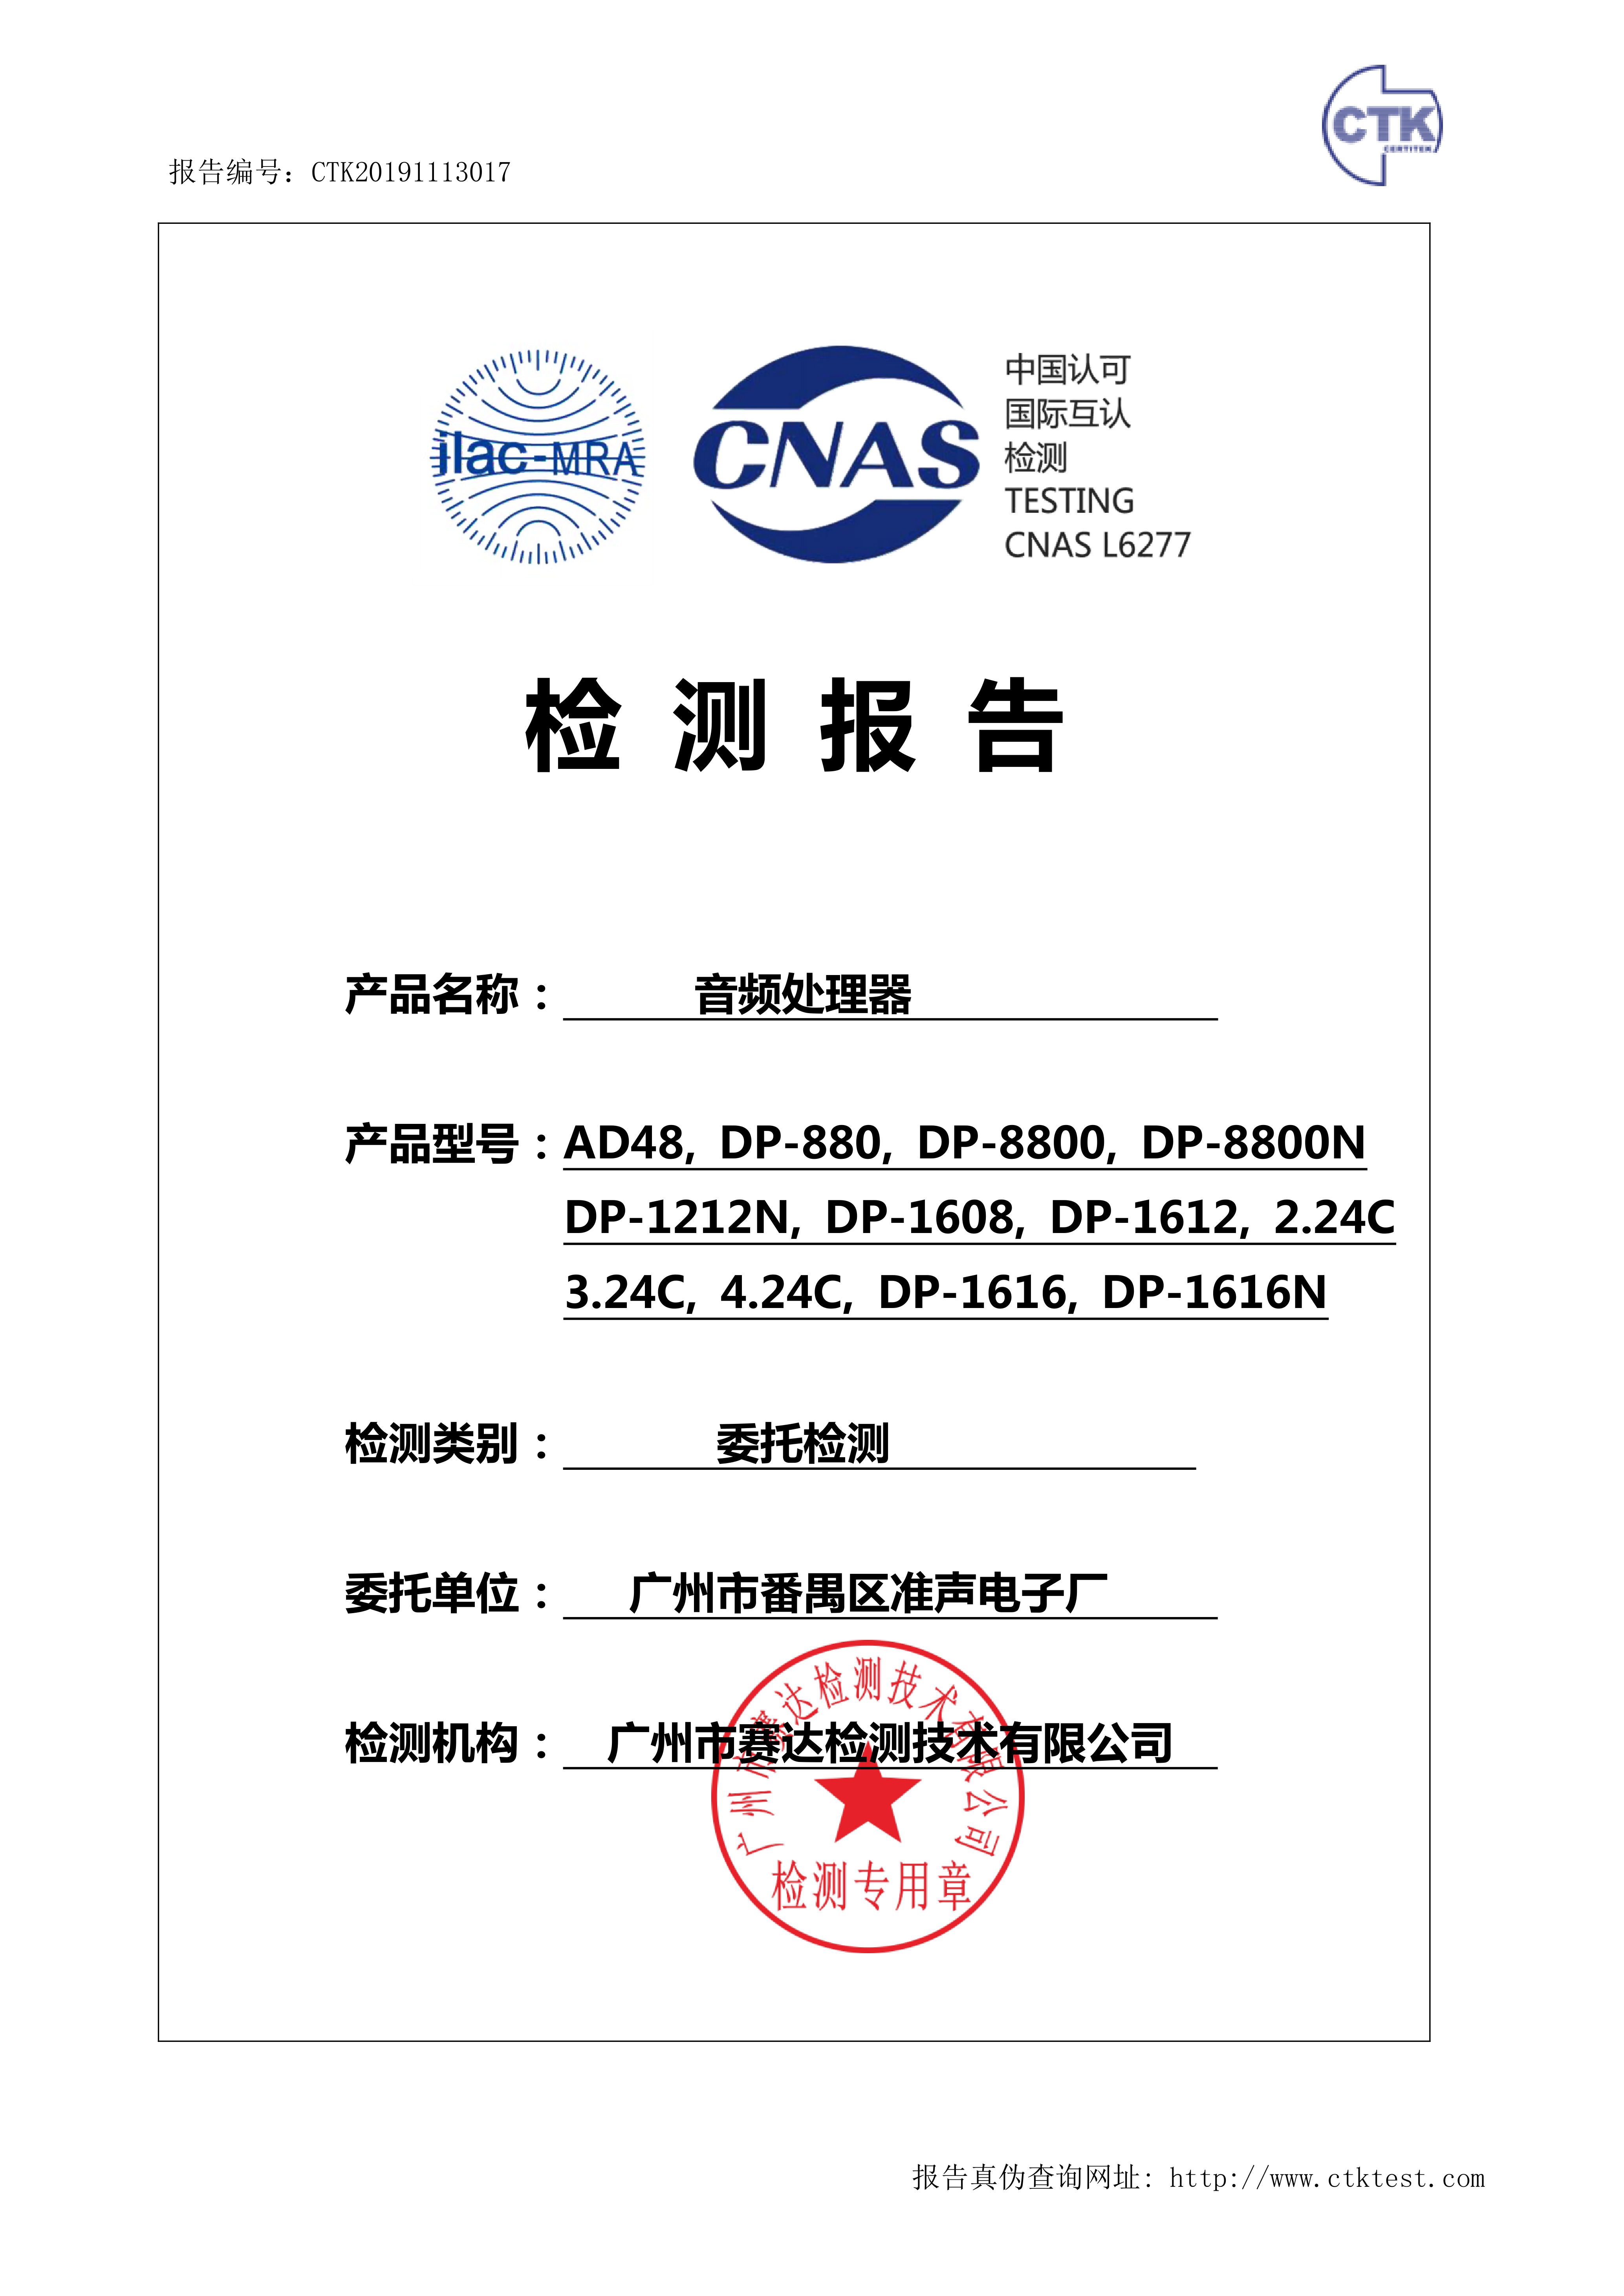 广州市番禺区准声电子厂(DP8800 音频处理器 CNAS委托测试)-报告_1